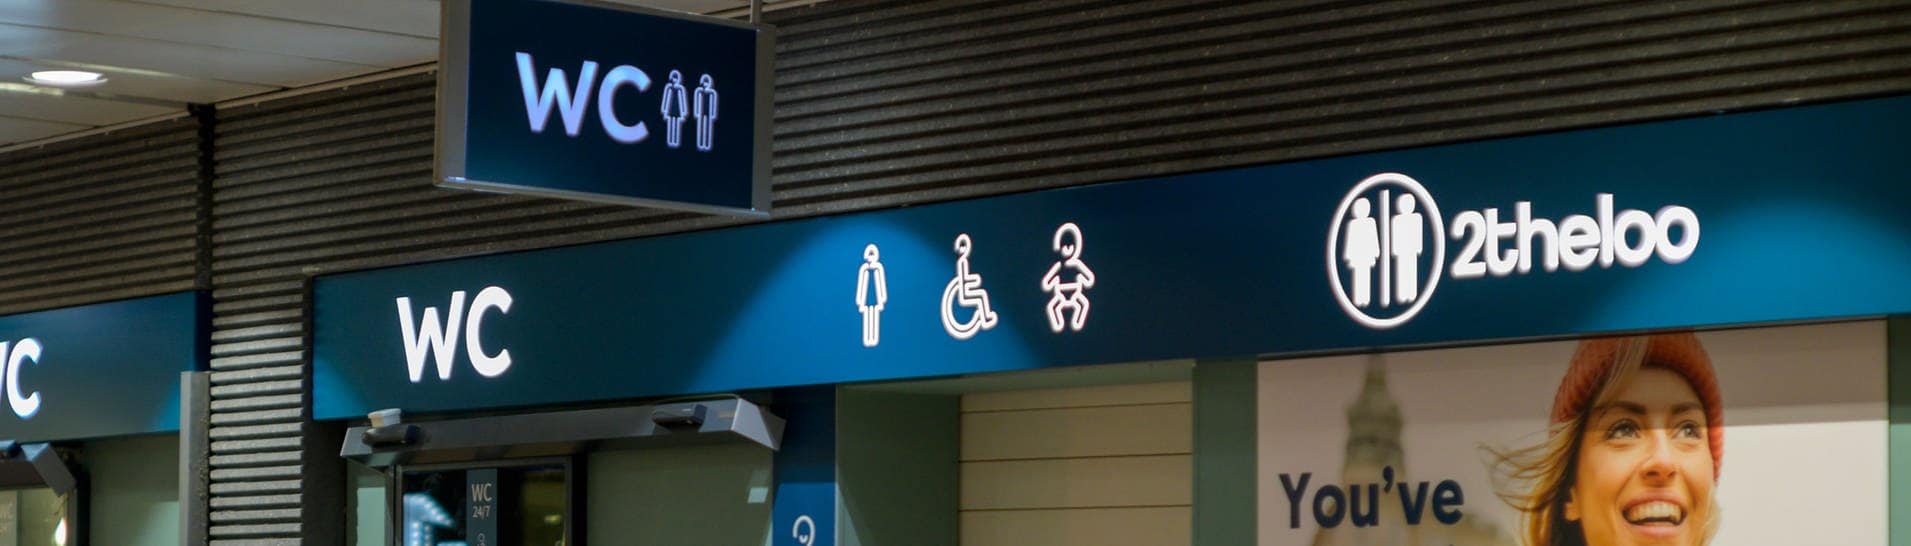 Die öffentliche Toilette von 2theloo am Bahnhof von Antwerpen in Belgien